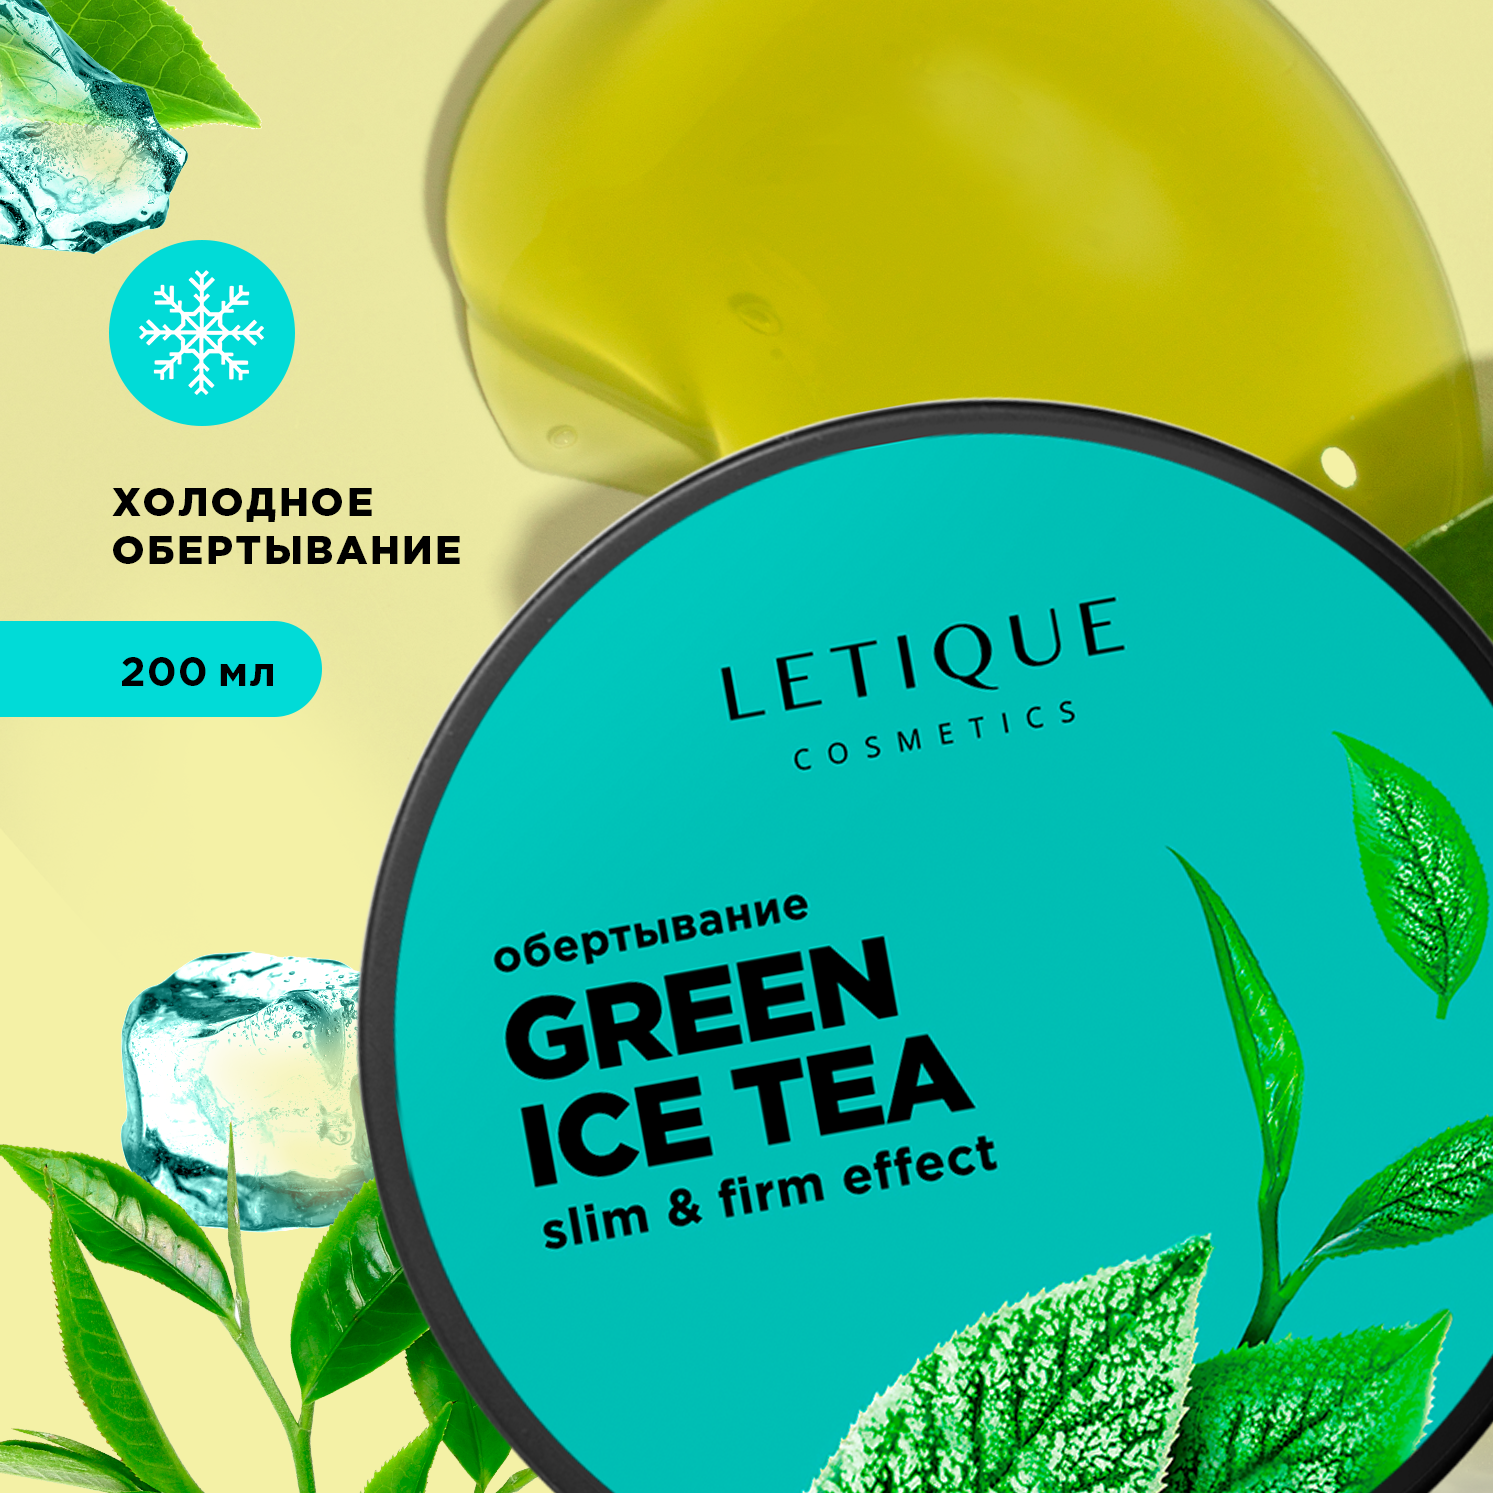 Обертывание холодное для тела Letique Cosmetics Green Ice Tea letique cosmetics холодный антицеллюлитный комплекс